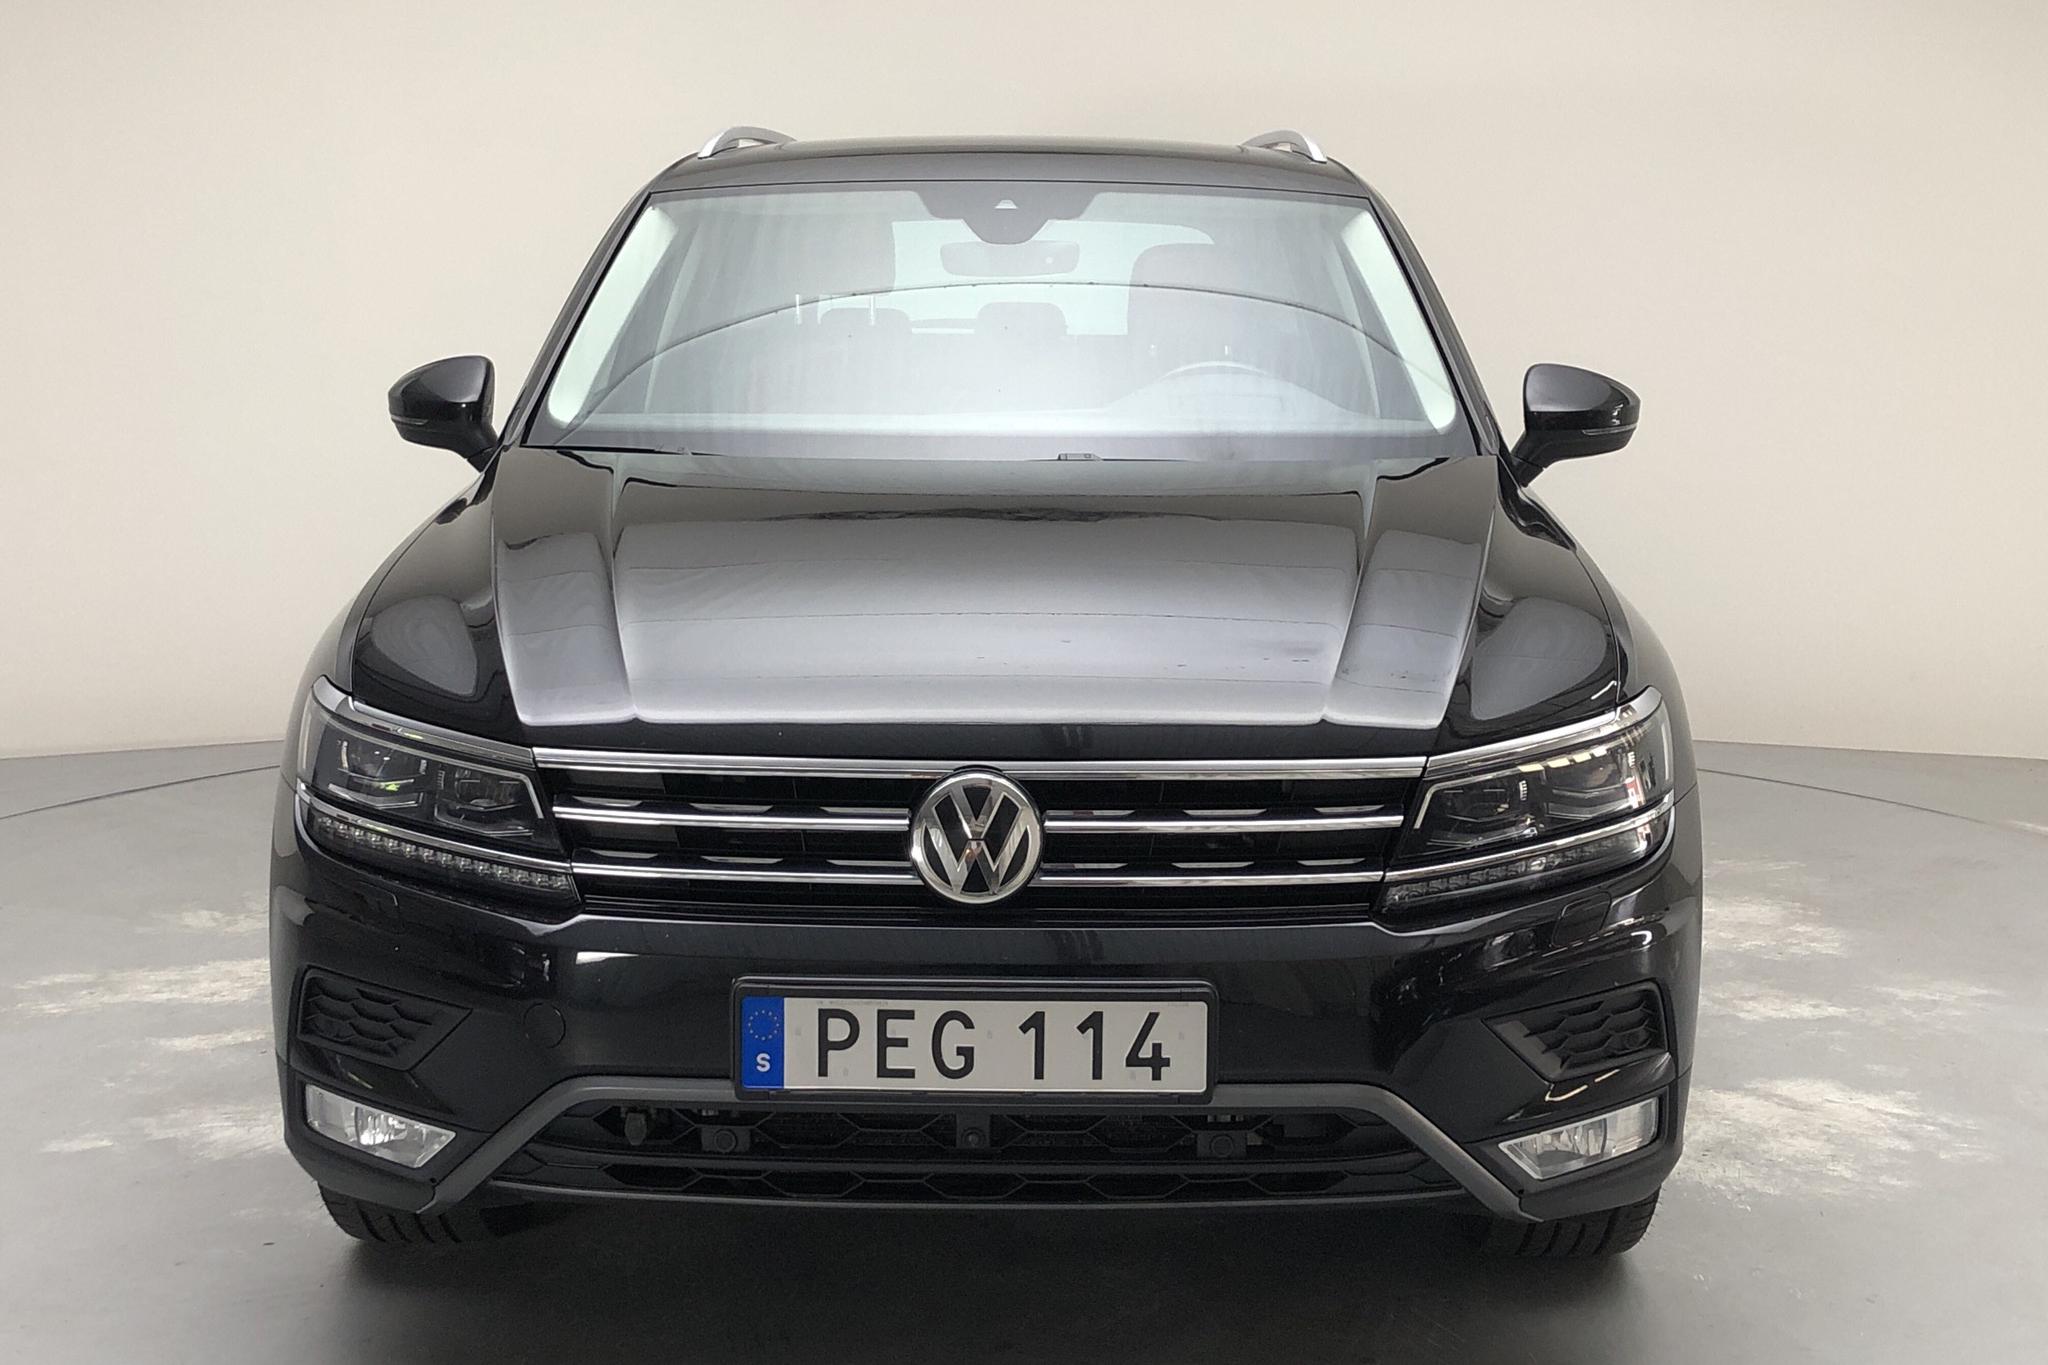 VW Tiguan 2.0 TDI 4MOTION (190hk) - 118 700 km - Automatic - black - 2017